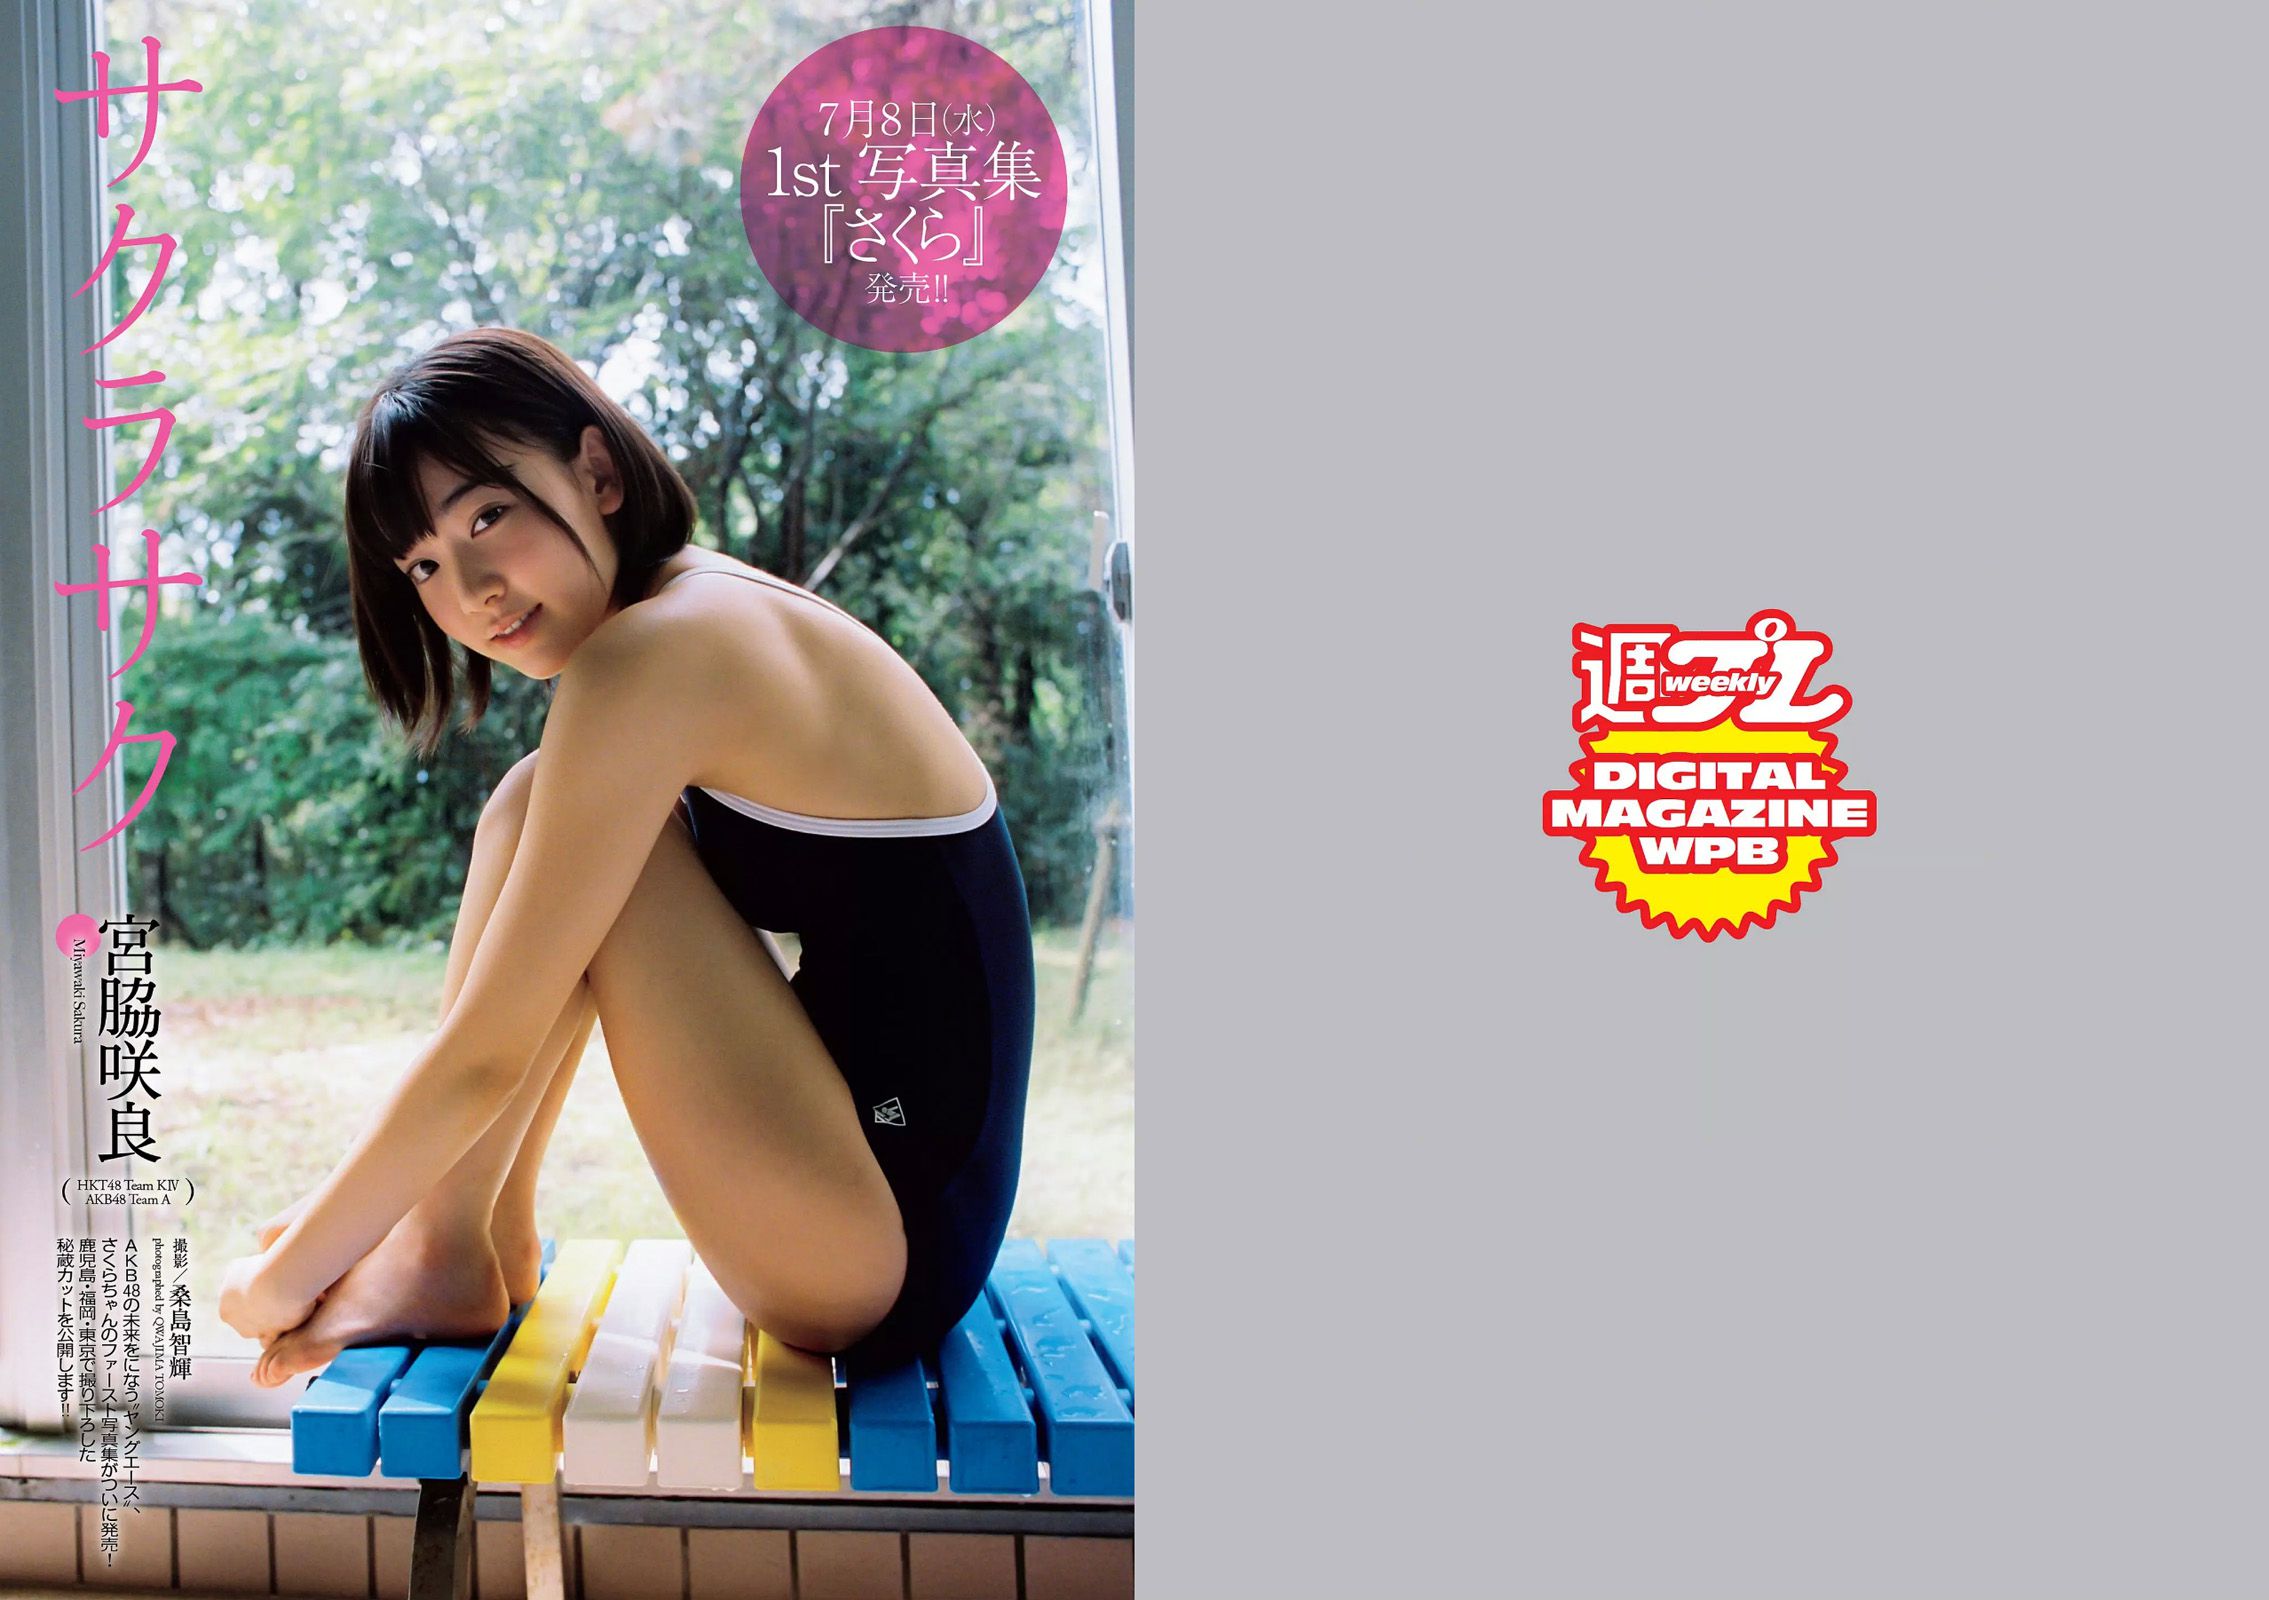 宮脇咲良 大川藍 寺田安裕香 AKB48 松嶋えいみ [Weekly Playboy] 2015年No.29 写真杂志